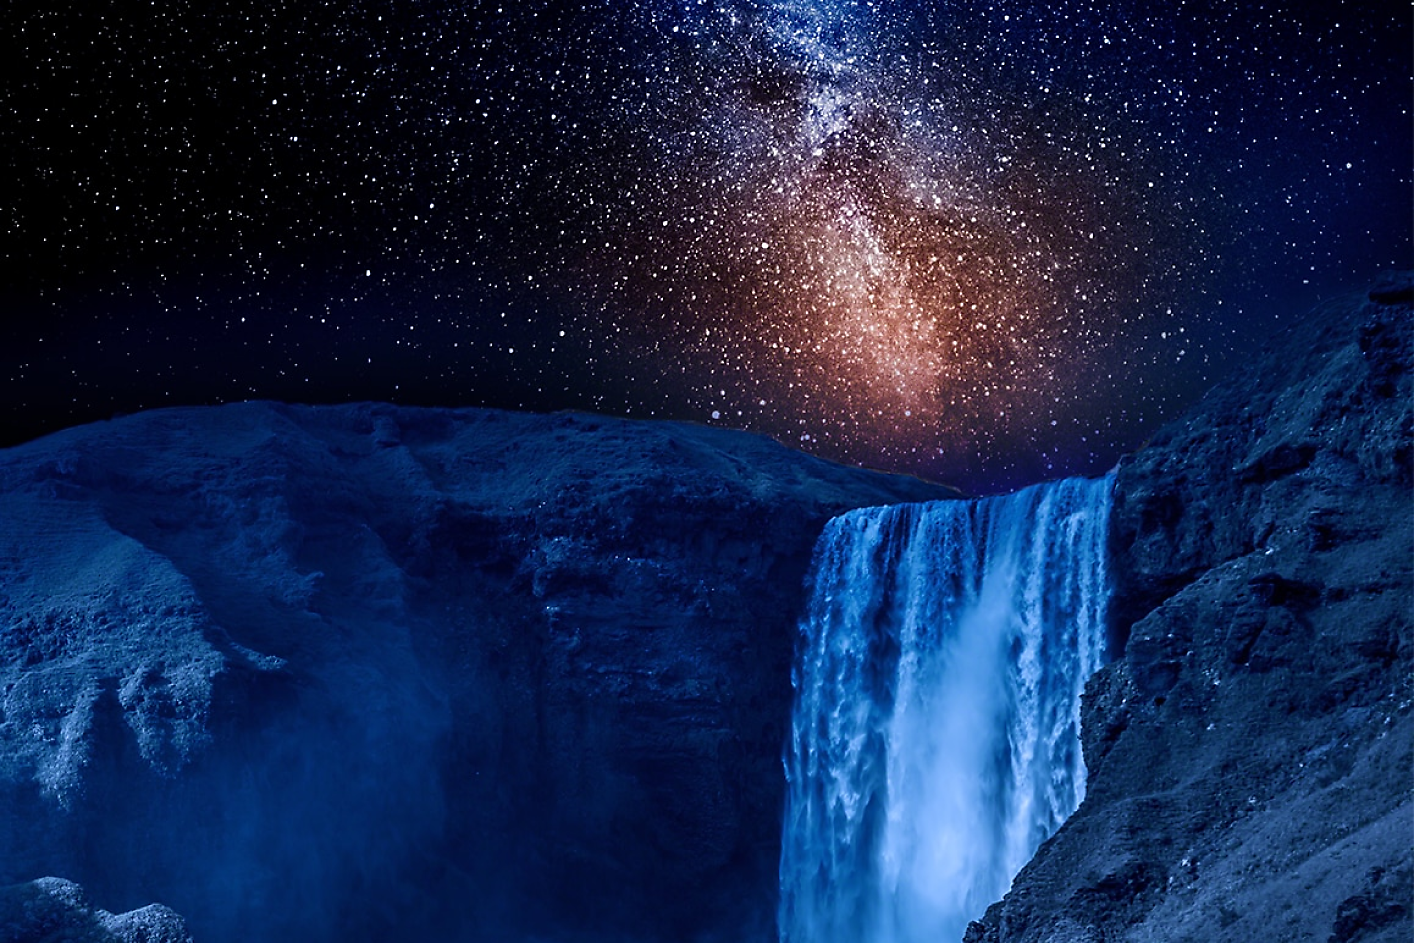 Vista de una cascada azul oscura con un cielo nocturno estrellado de fondo